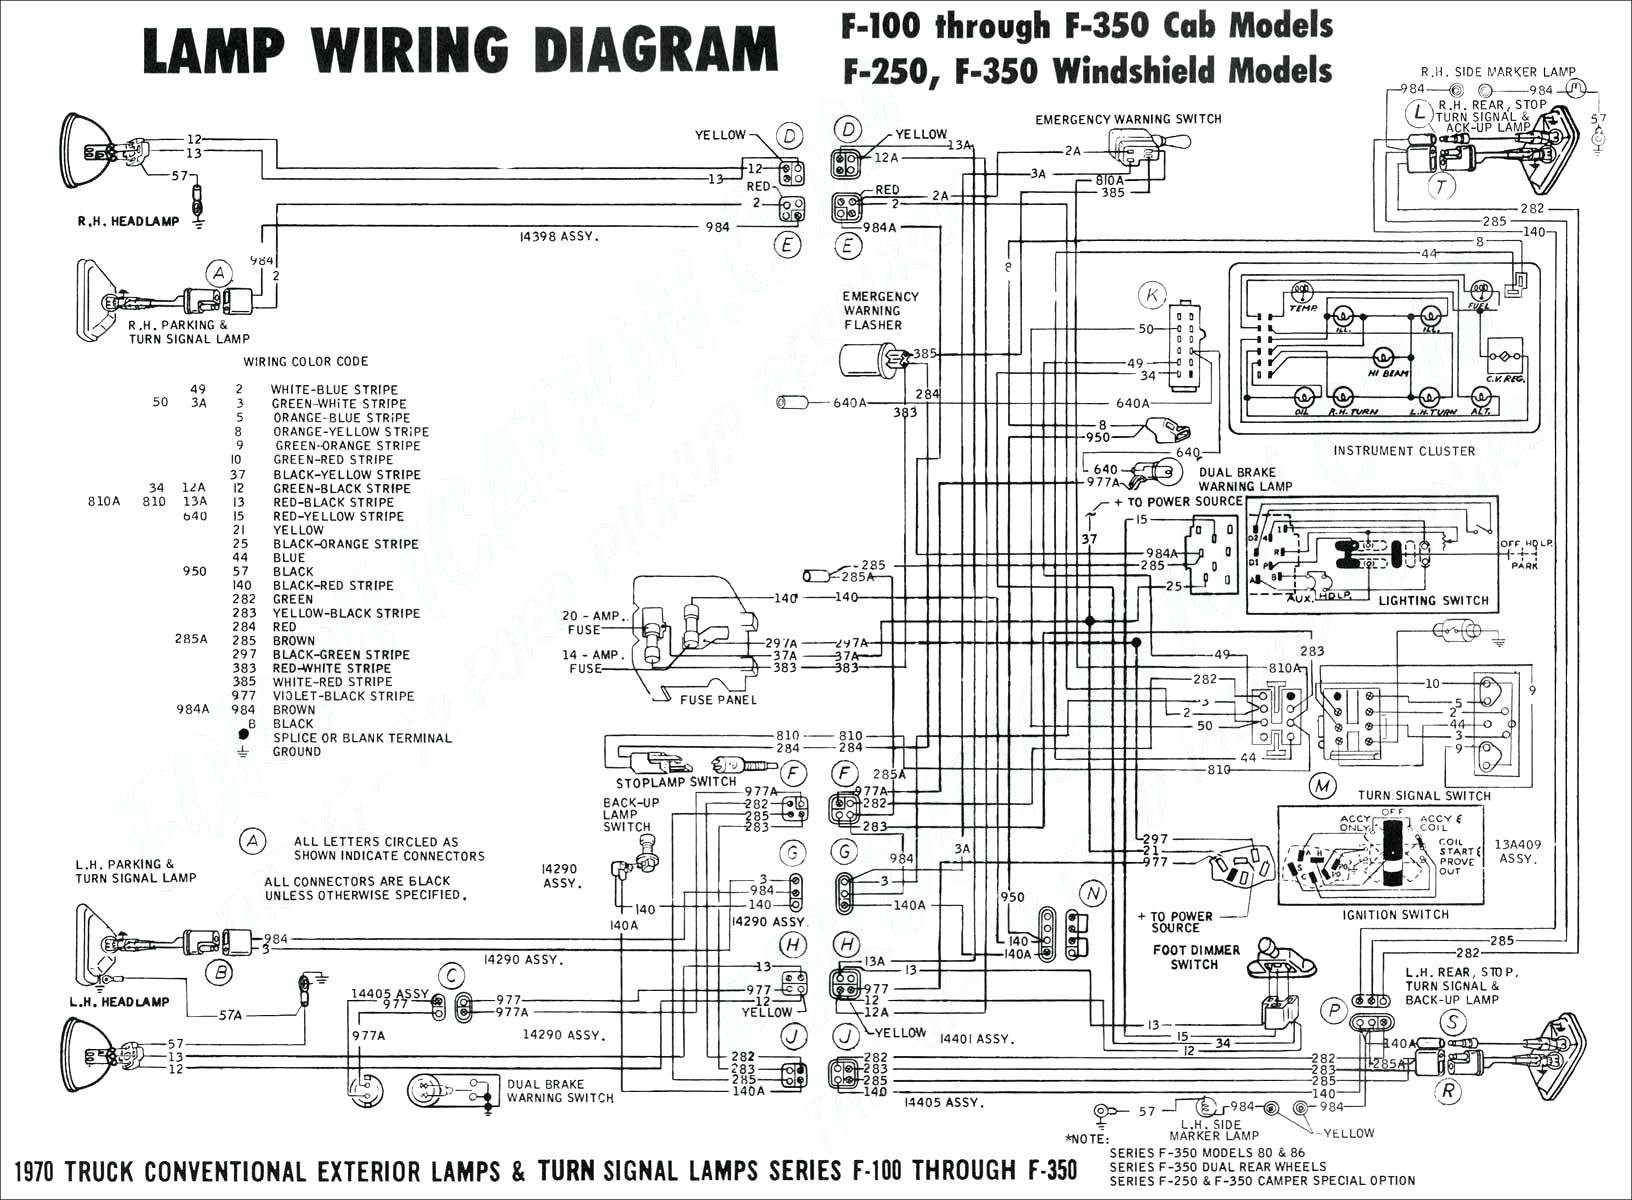 Yamaha Fzr 600 Wiring Diagram 1981 Goldwing Wiring Diagram Wiring Diagram toolbox Of Yamaha Fzr 600 Wiring Diagram